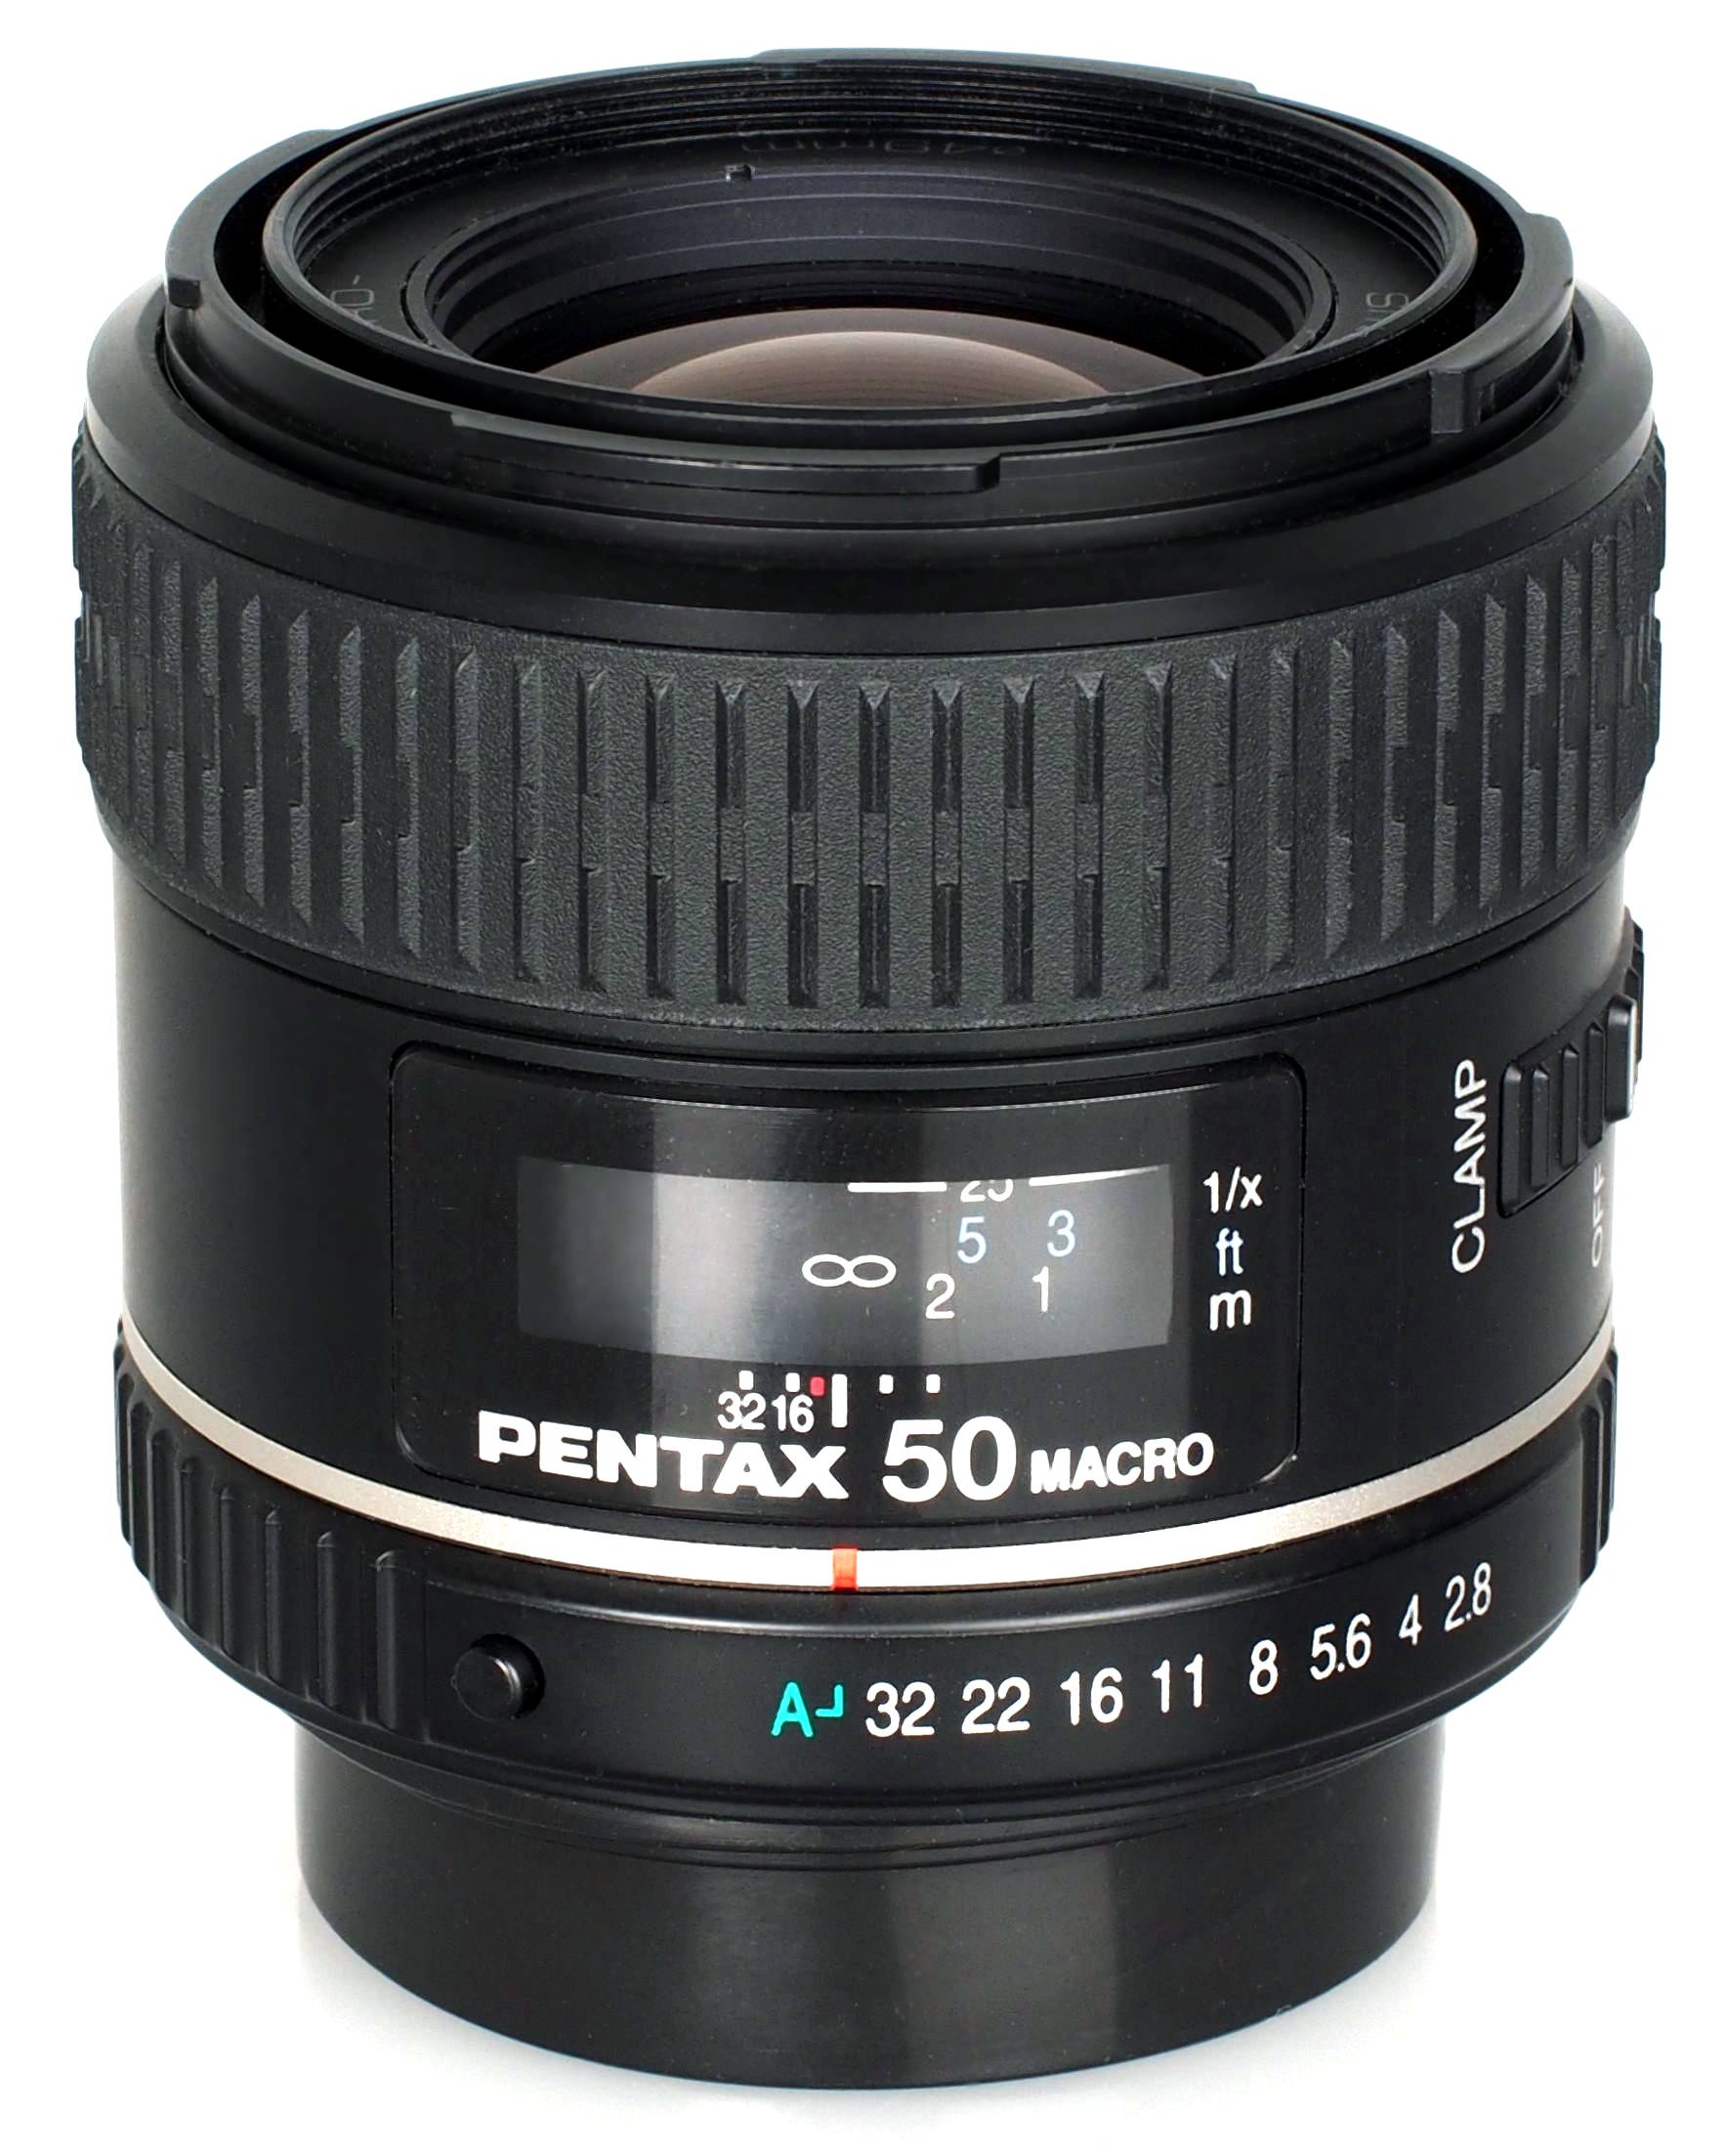 Pentax-D FA Macro 100MM HD F2.8ED AW Lens